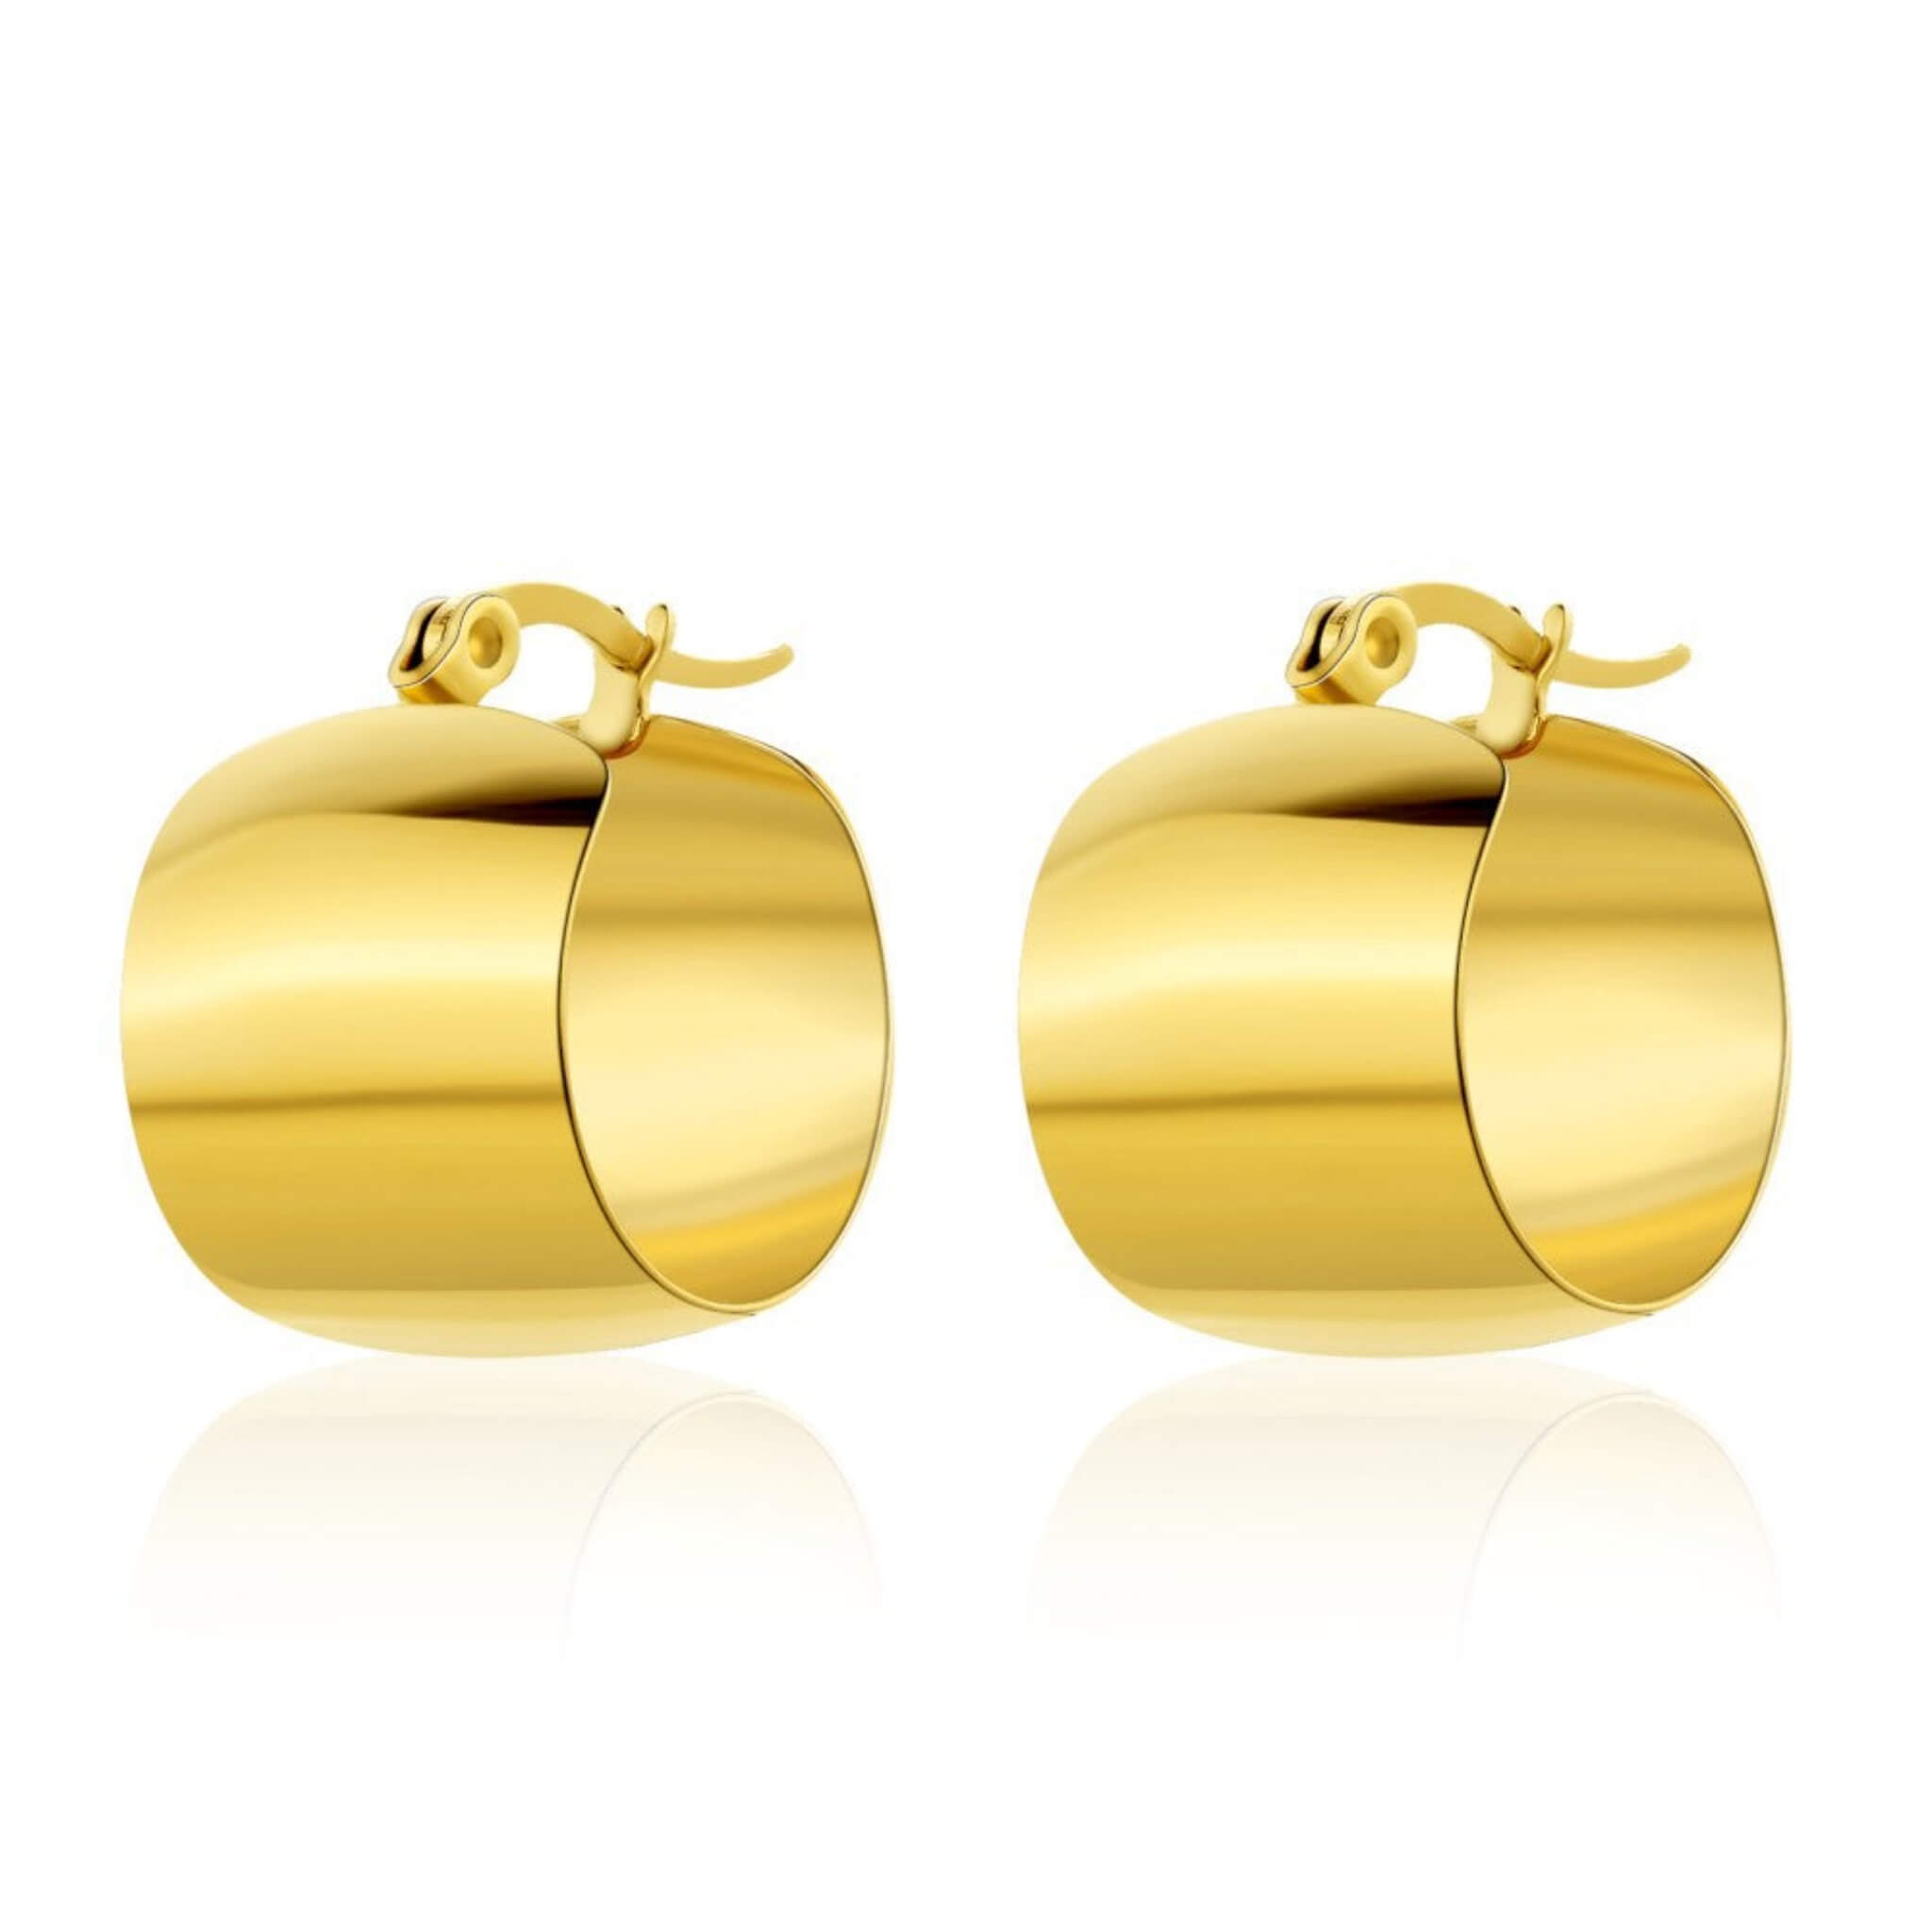 Irregular Pattern French Earrings  UponBasics Golden E932-GO 